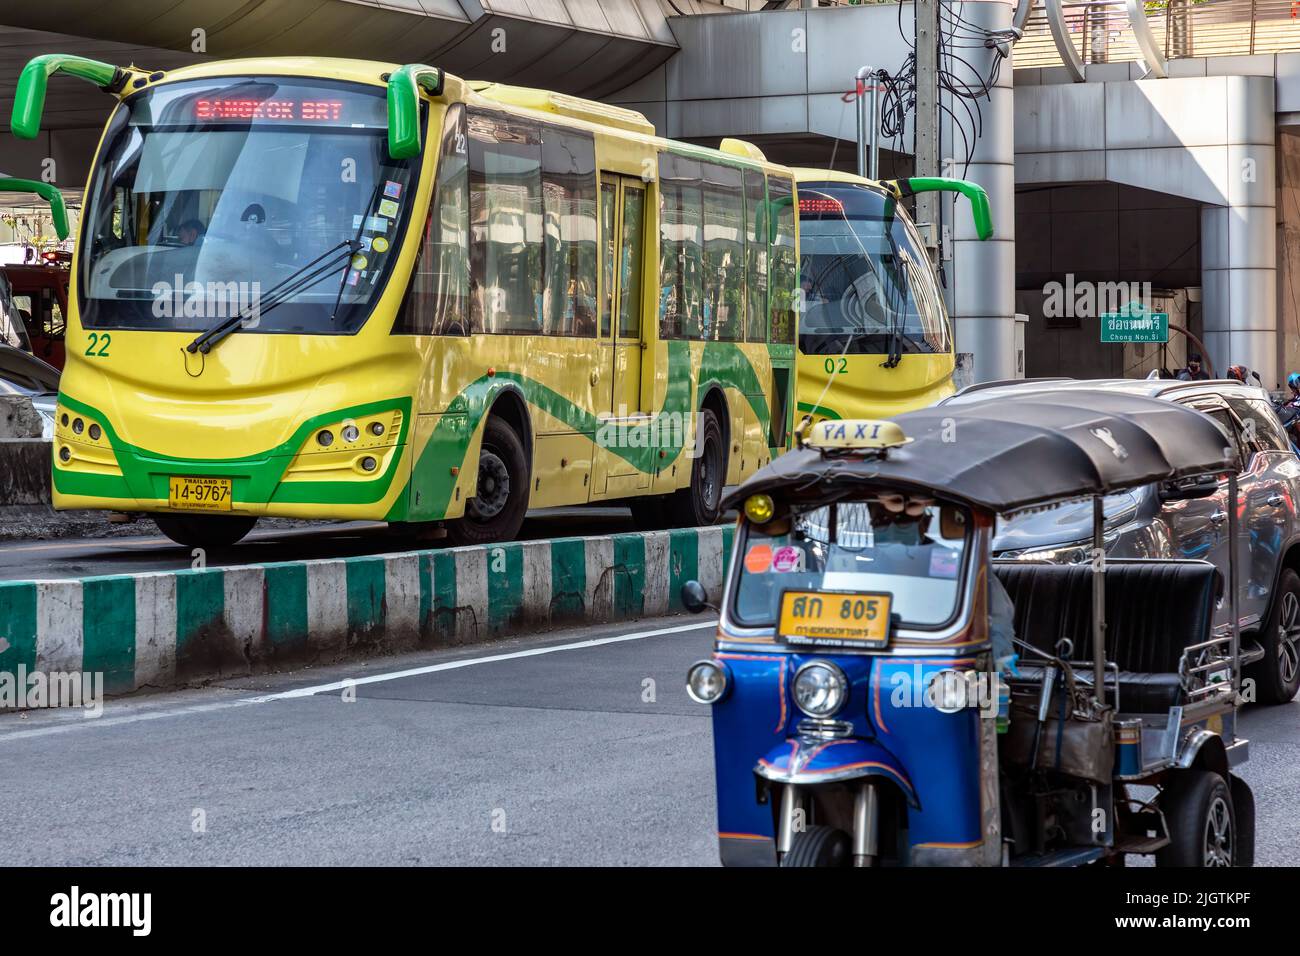 Bus Rapid Transit, tuk tuk, at Sathorn terminal station, Bangkok, Thailand Stock Photo